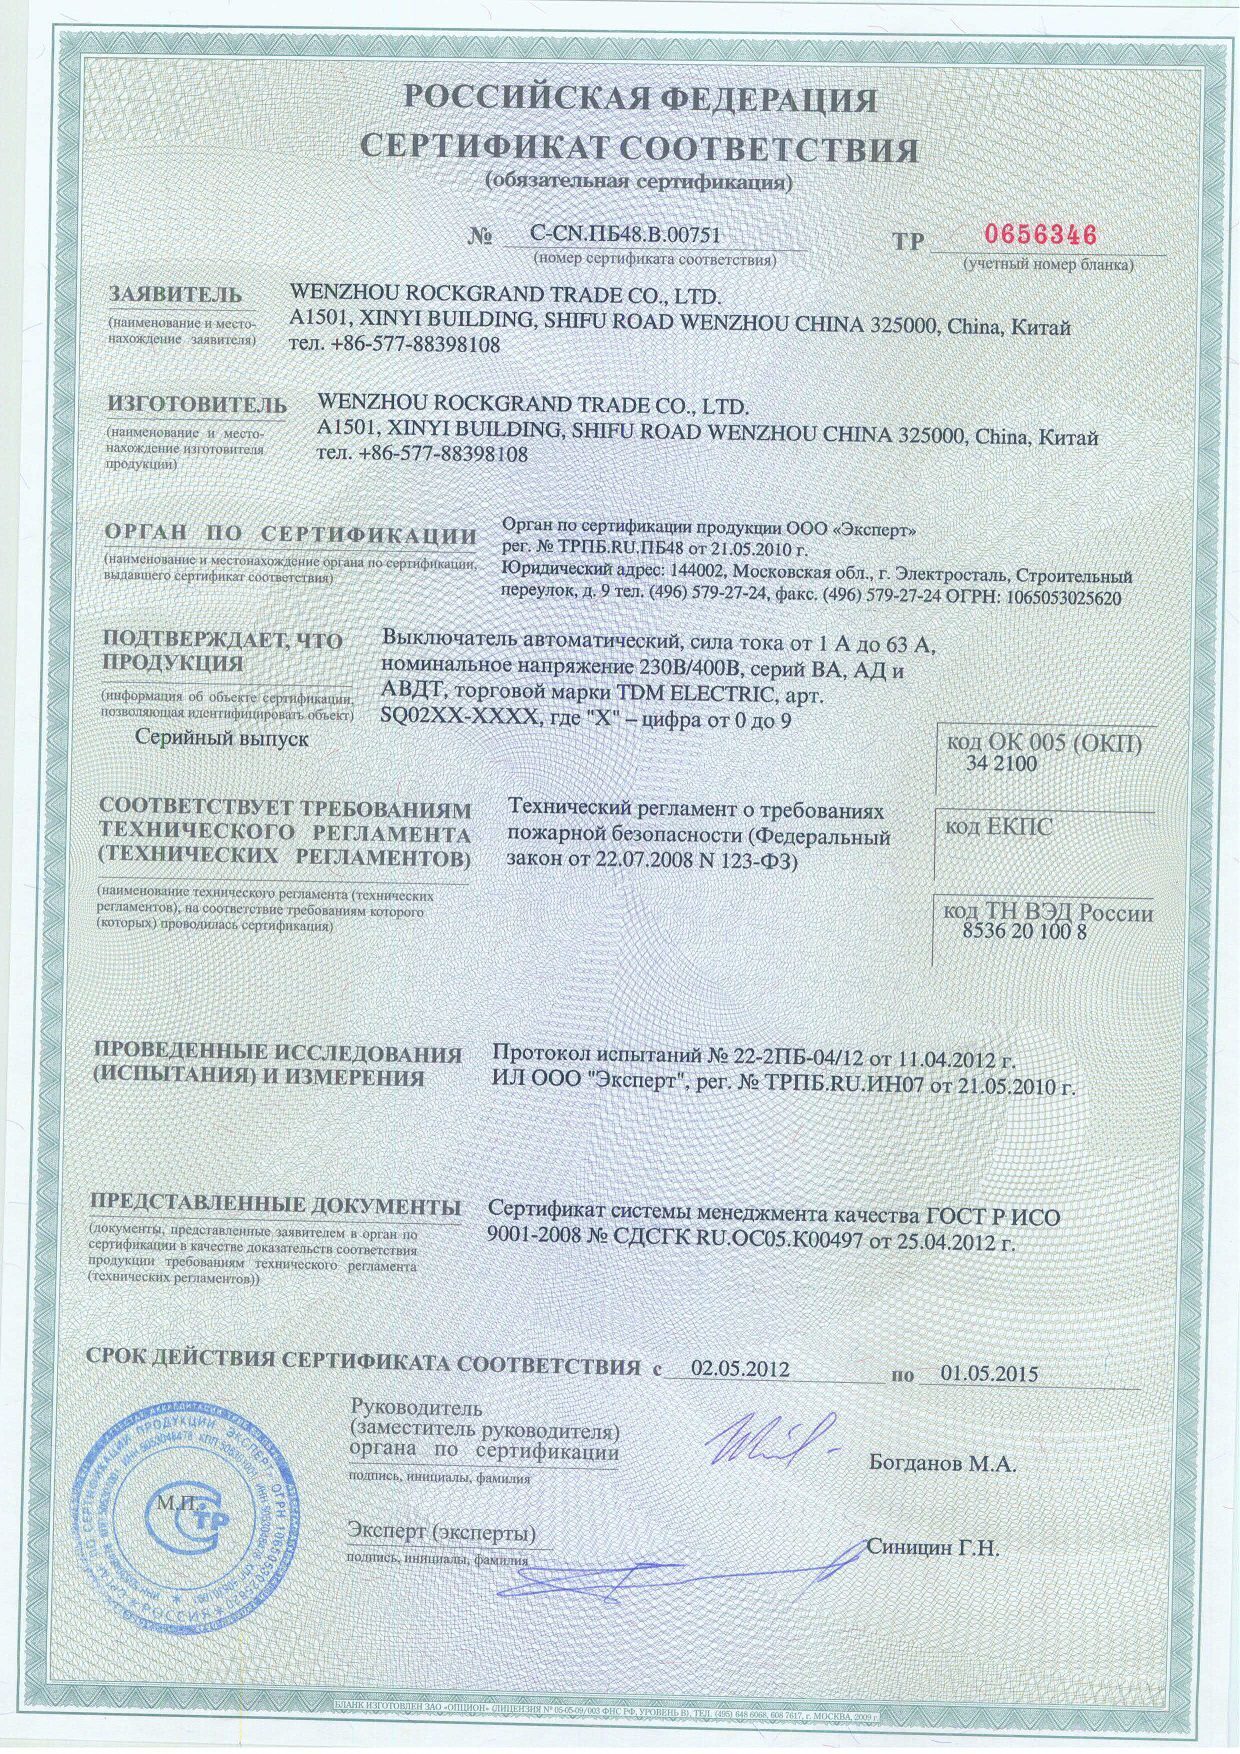 ТДМ автоматы ва 47-29 сертификат соответствия